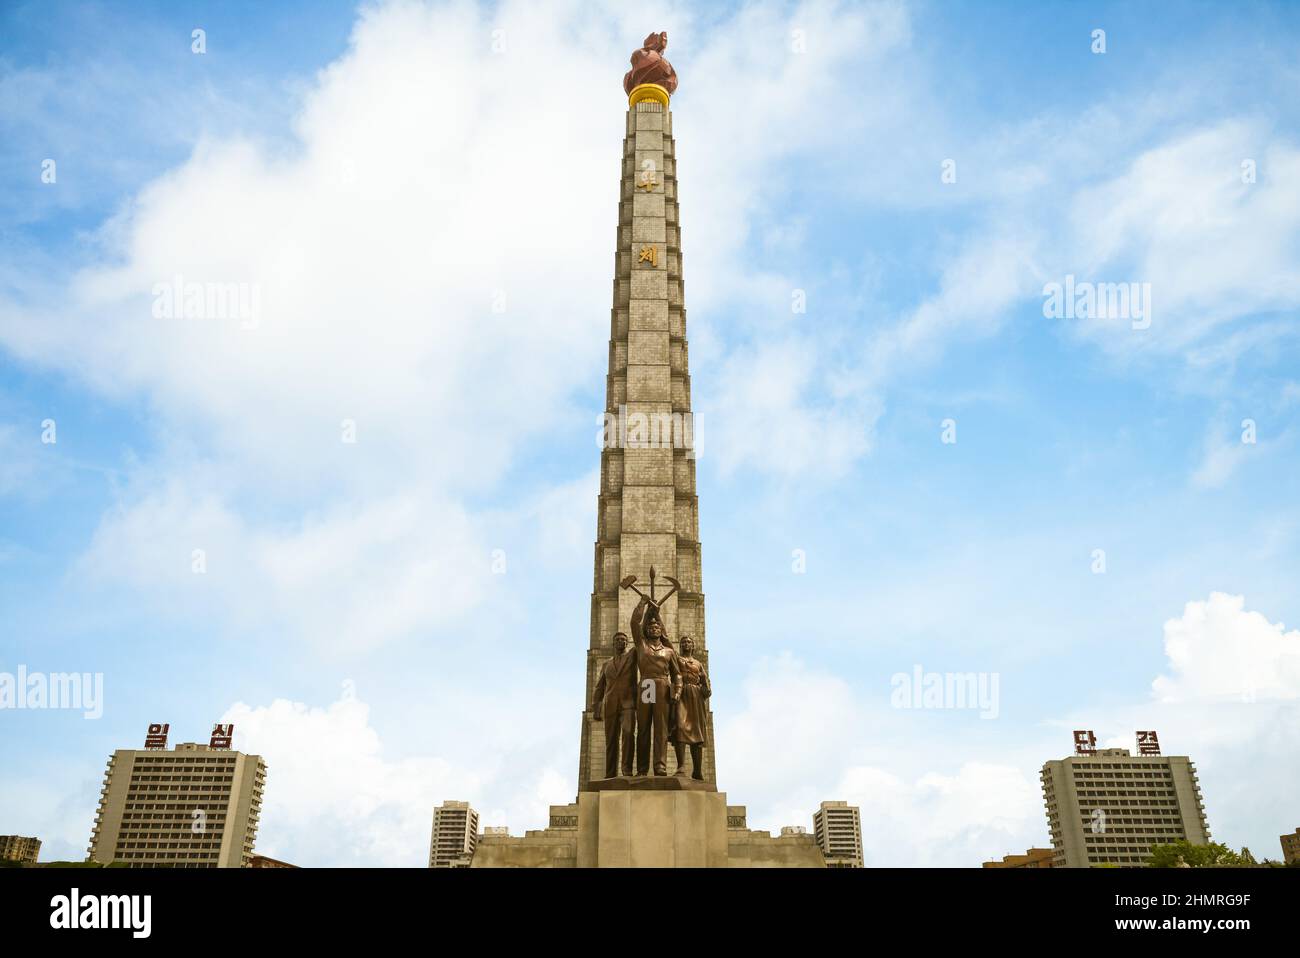 29-de-abril-de-2019-la-torre-juche-y-el-monumento-que-acompana-al-partido-de-los-trabajadores-de-corea-situado-en-pyongyang-la-capital-de-corea-del-norte-el-juch-2hmrg9f.jpg